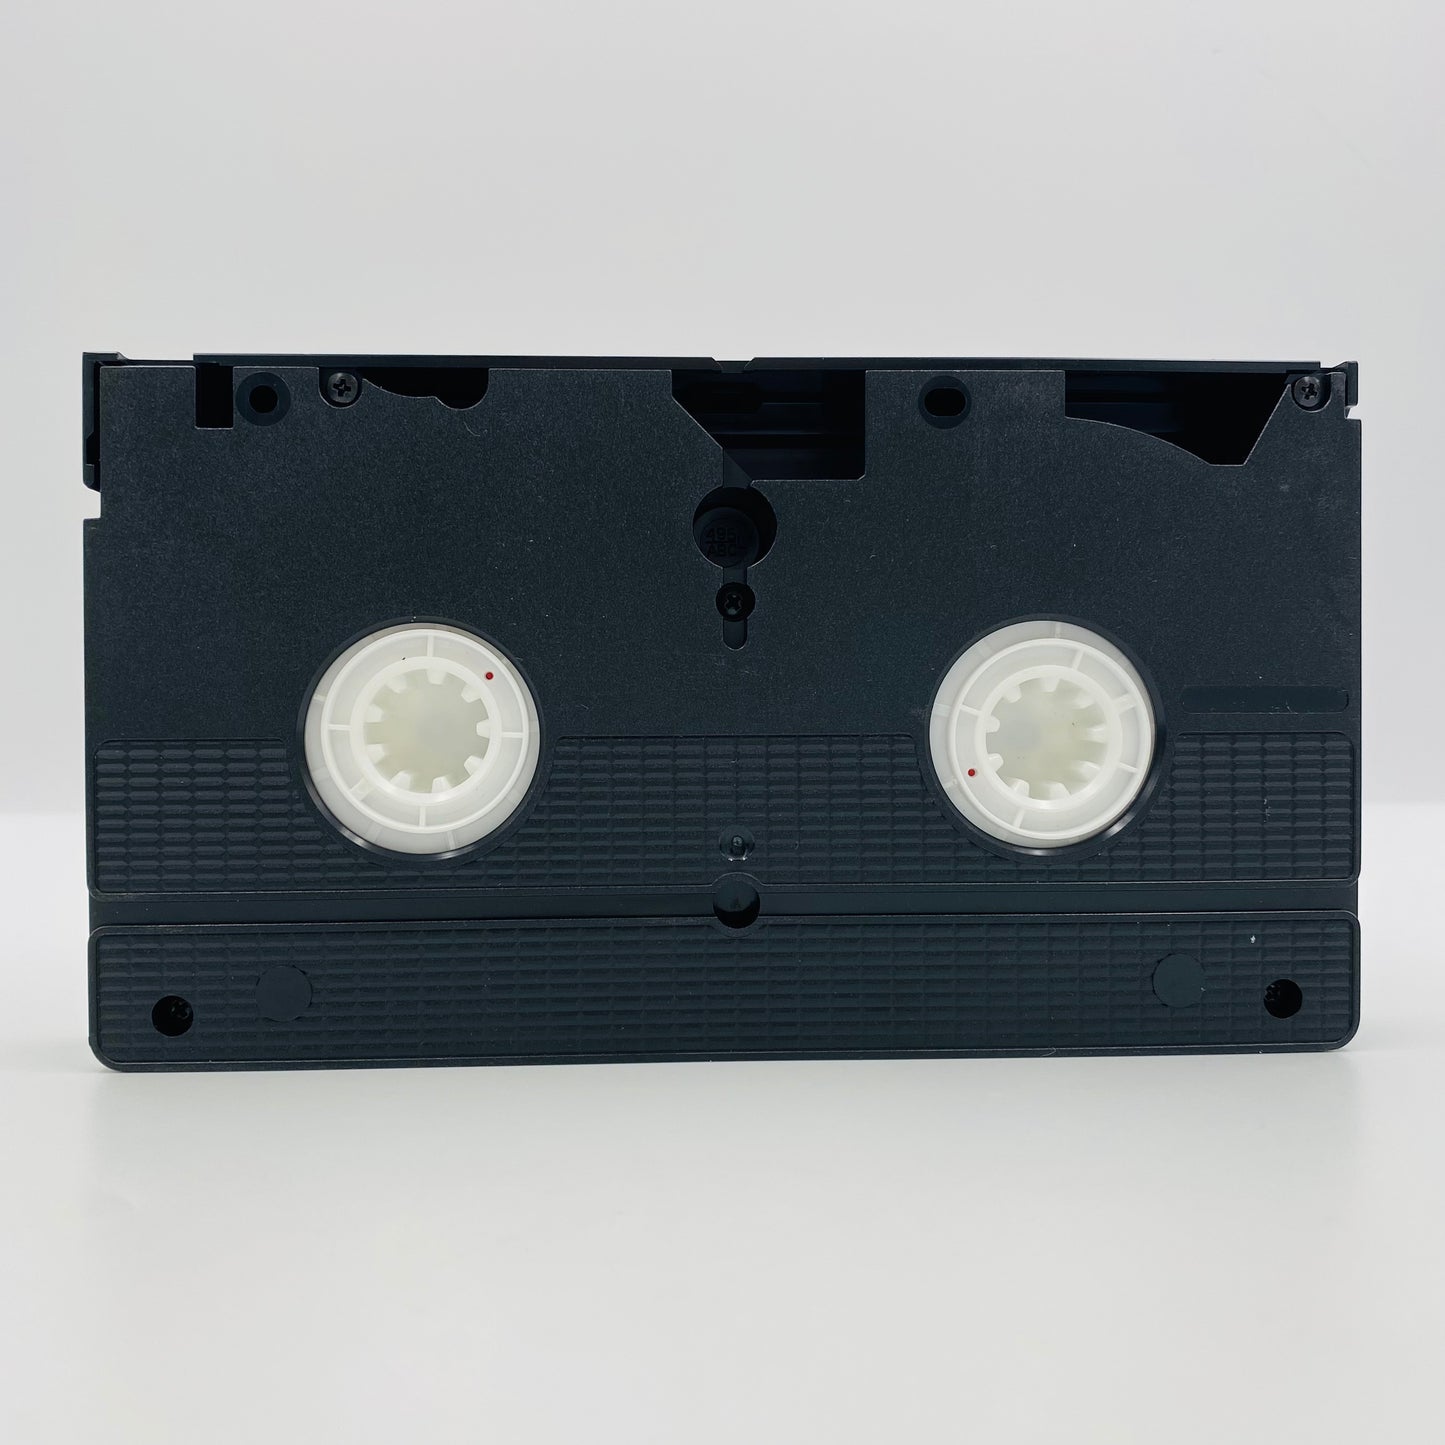 Who Framed Roger Rabbit VHS tape (1989) Touchstone Home Video